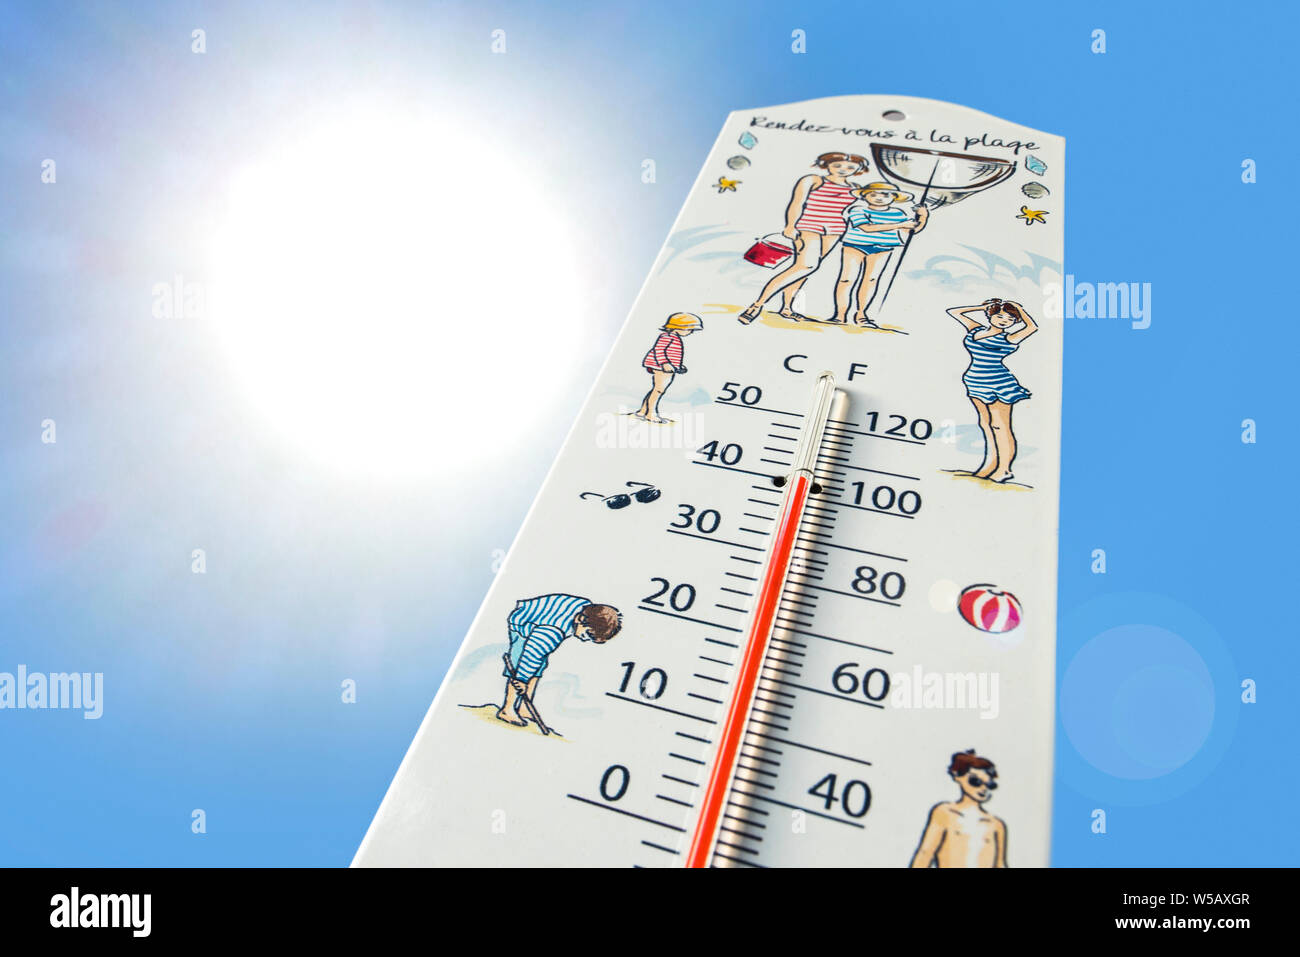 Vista del gusano de termómetro medidas extremadamente caliente a la temperatura de 40°C / 40 °C (100 °F durante la canícula / ola de calor en verano Foto de stock